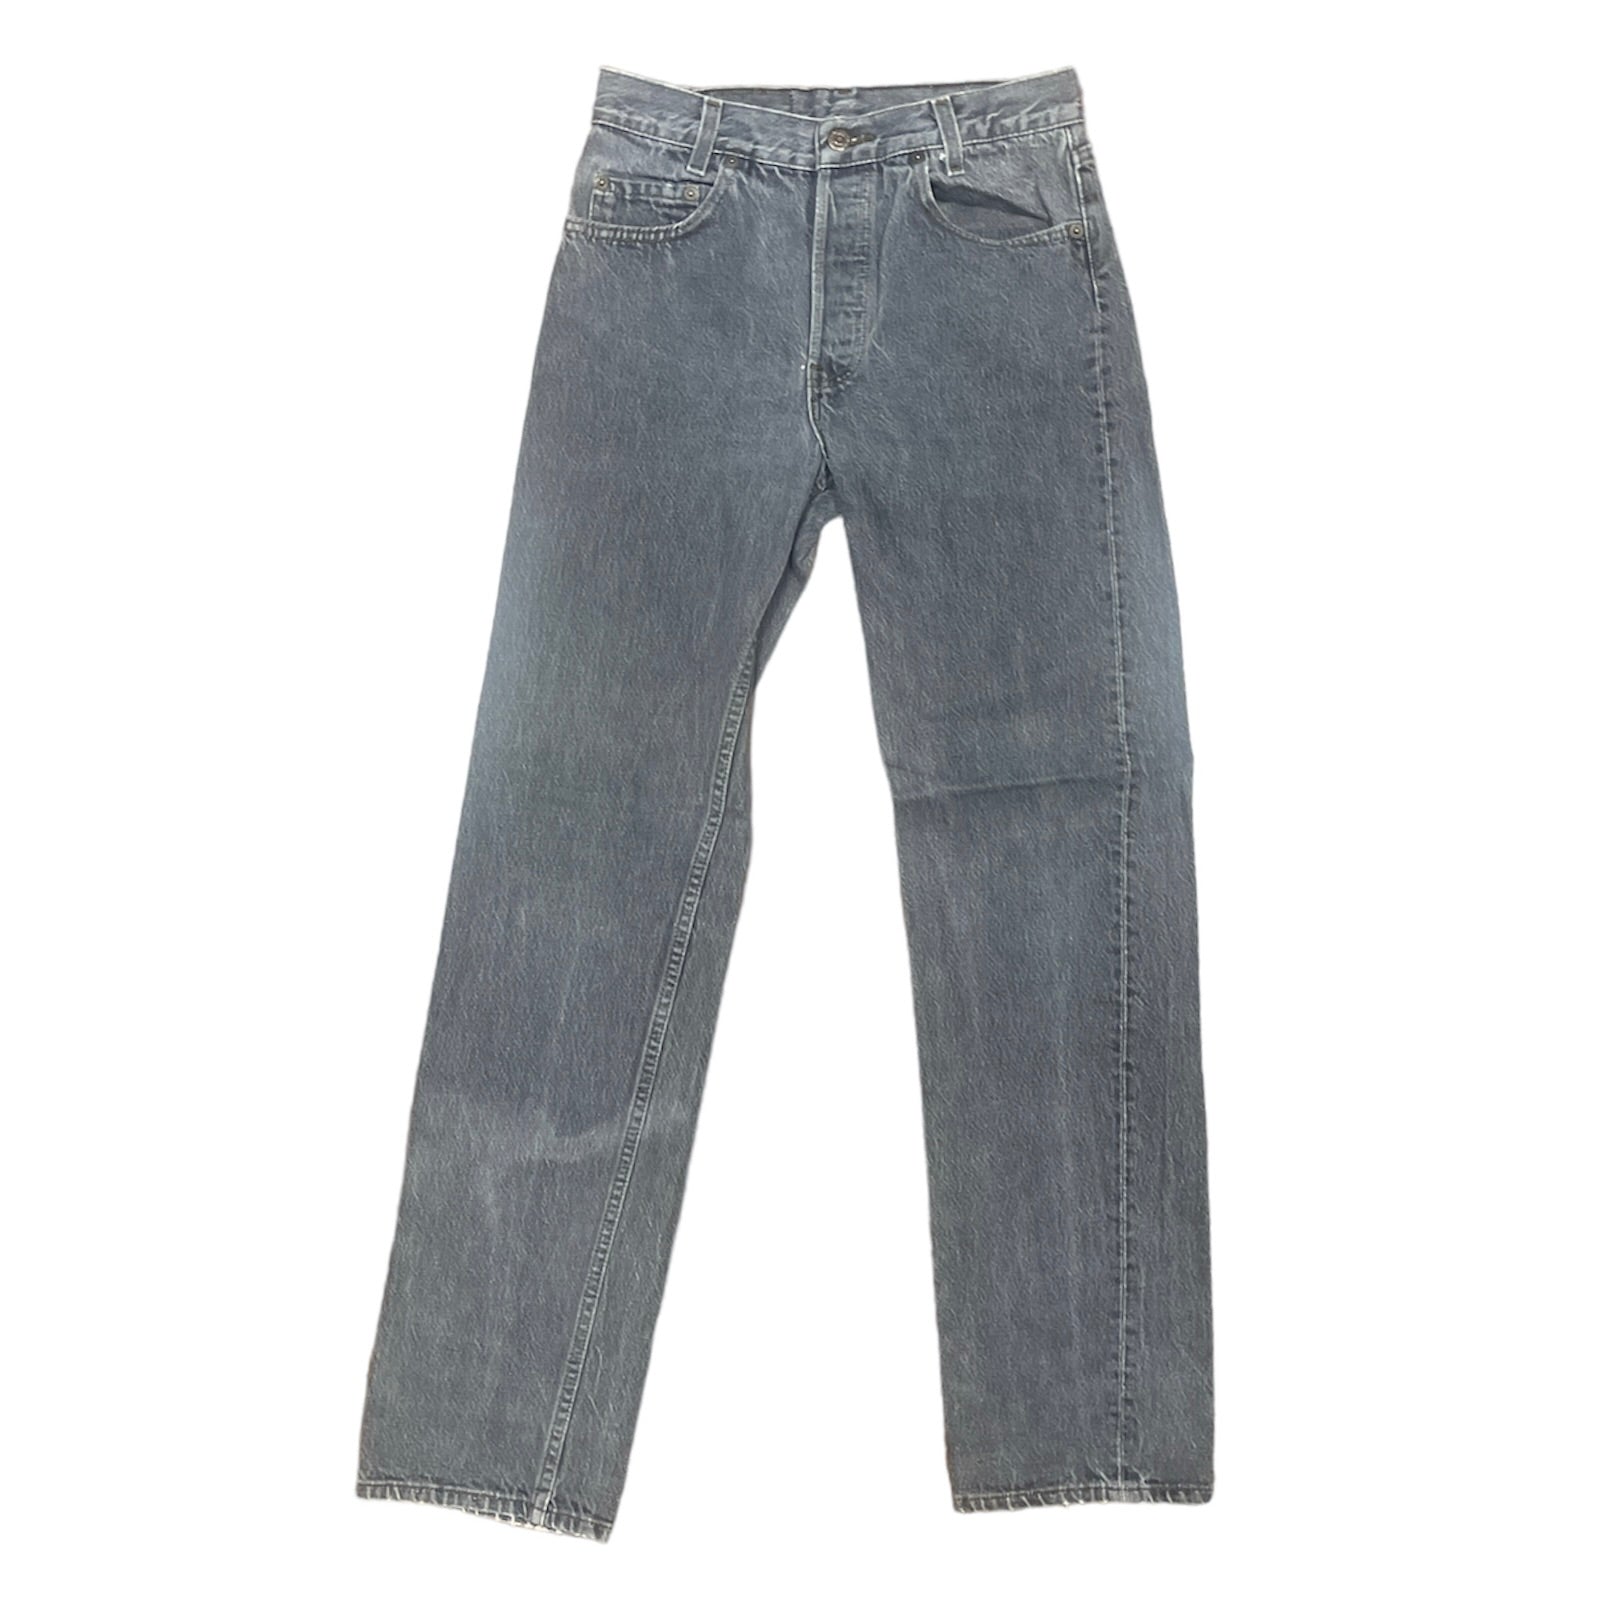 Vintage Levis Student Grey Jeans (W29/L32)